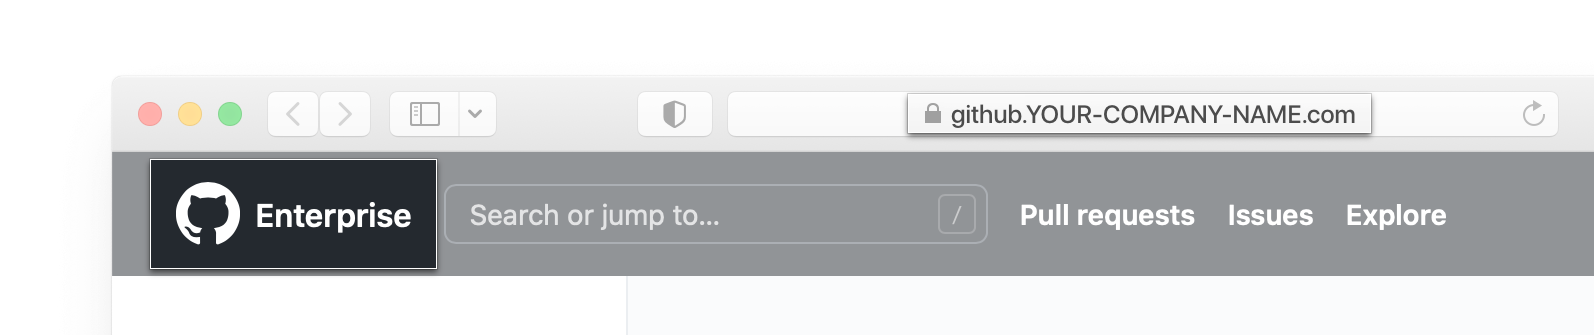 Captura de tela da barra de endereços e header GitHub Enterprise Server em um navegador